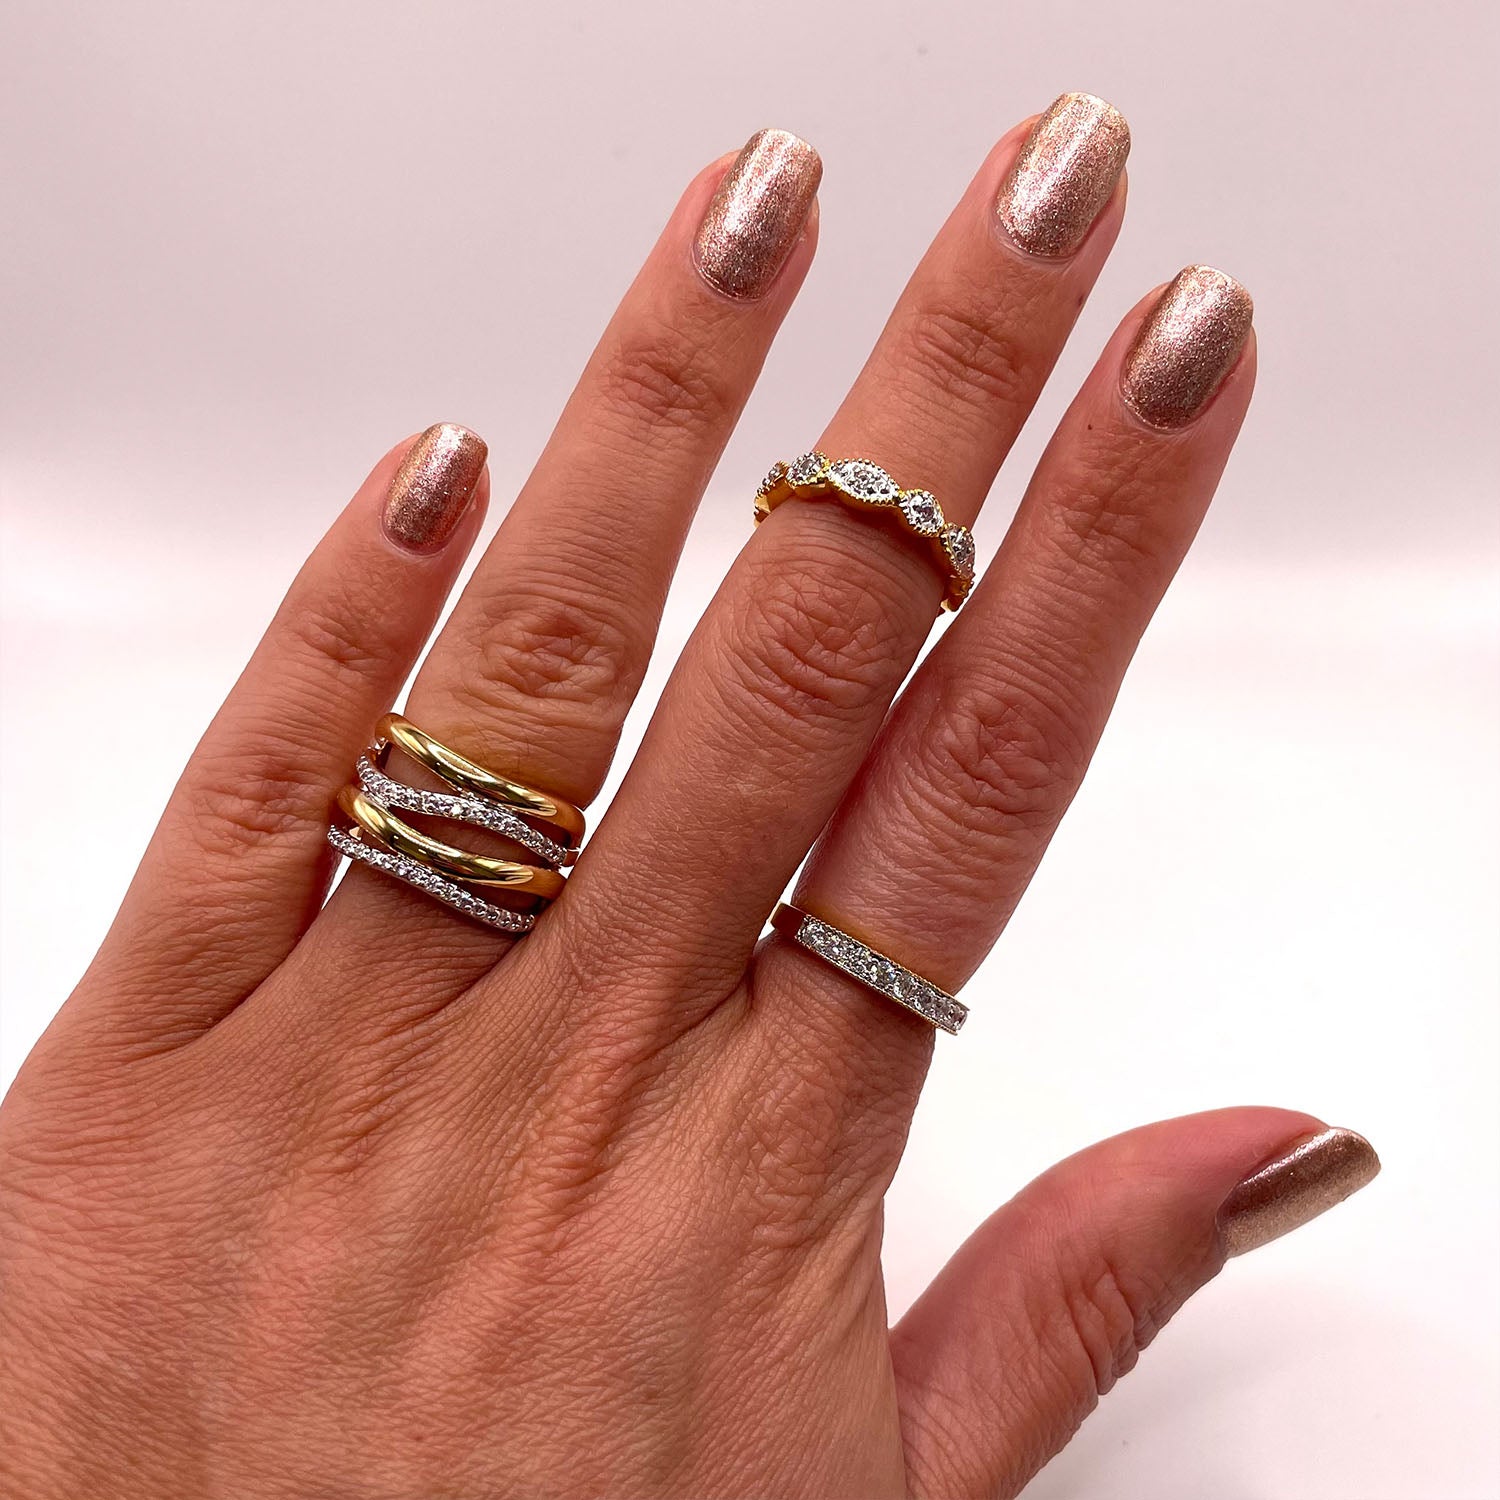 Tali 4-Row Wavy CZ Diamond Ring, Gold - Zahra Jewelry